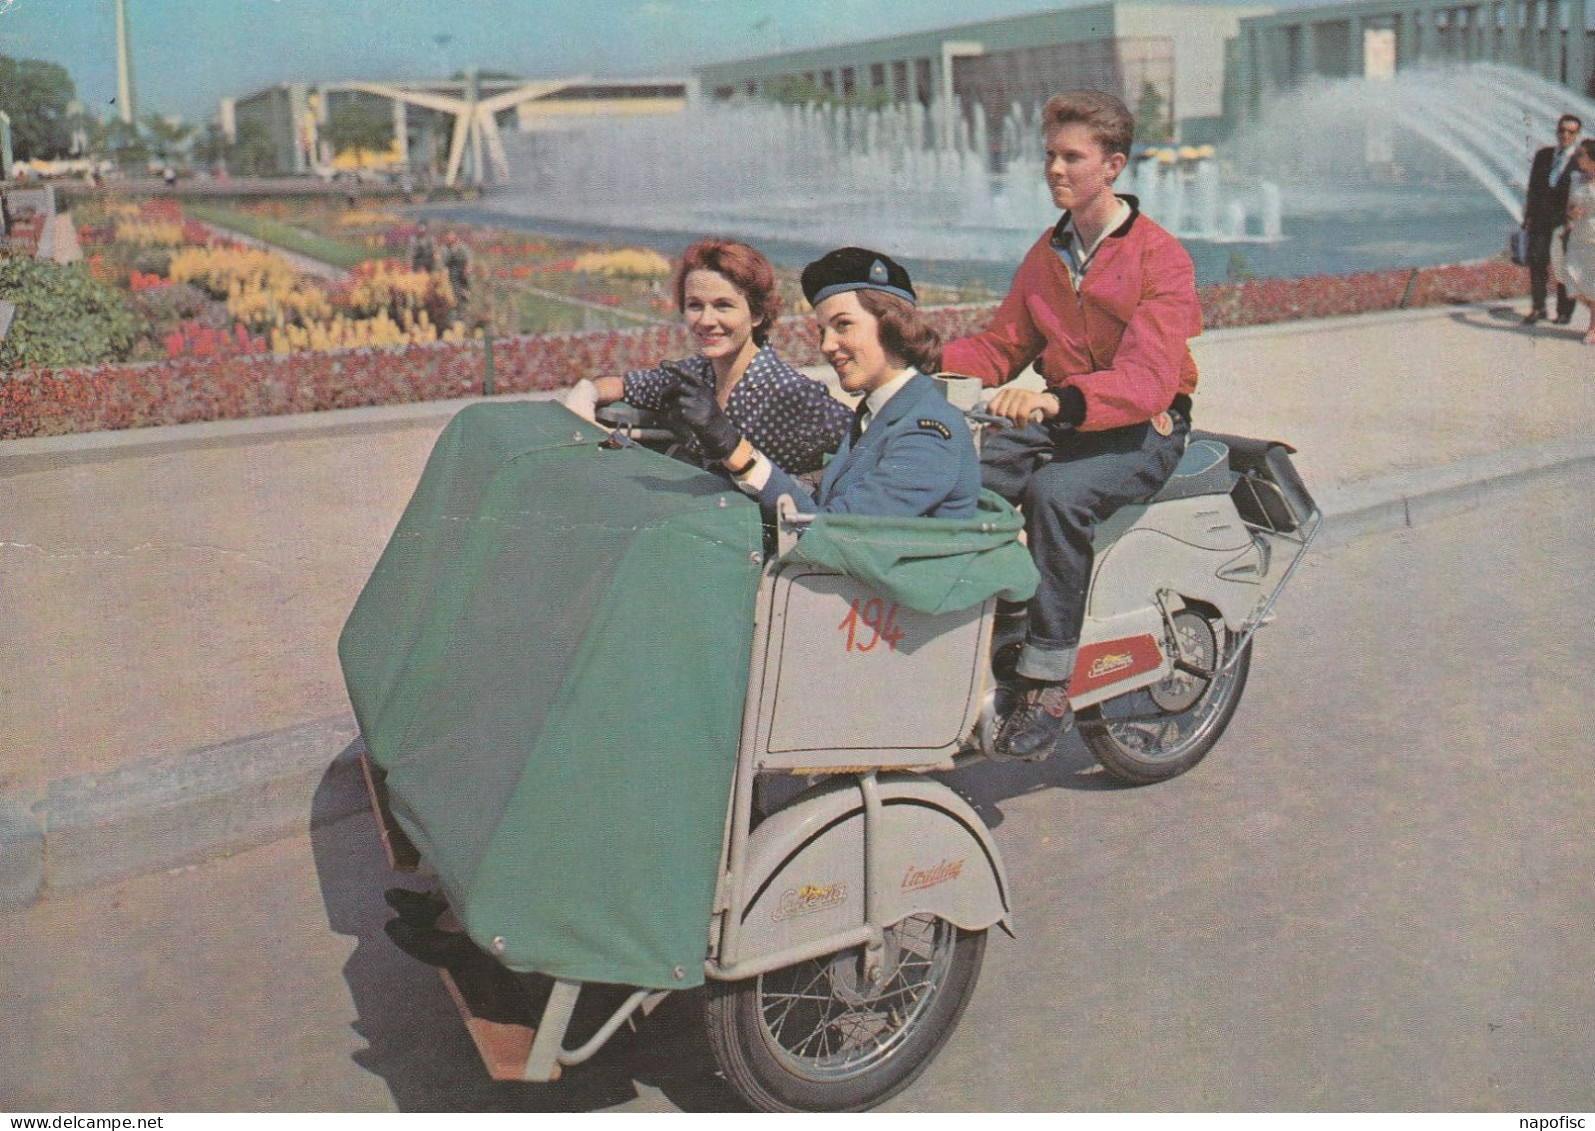 104-Bruxelles-Brussel Exposition Universelle 1958 Cyclo-Pousse Baltour - Public Transport (surface)